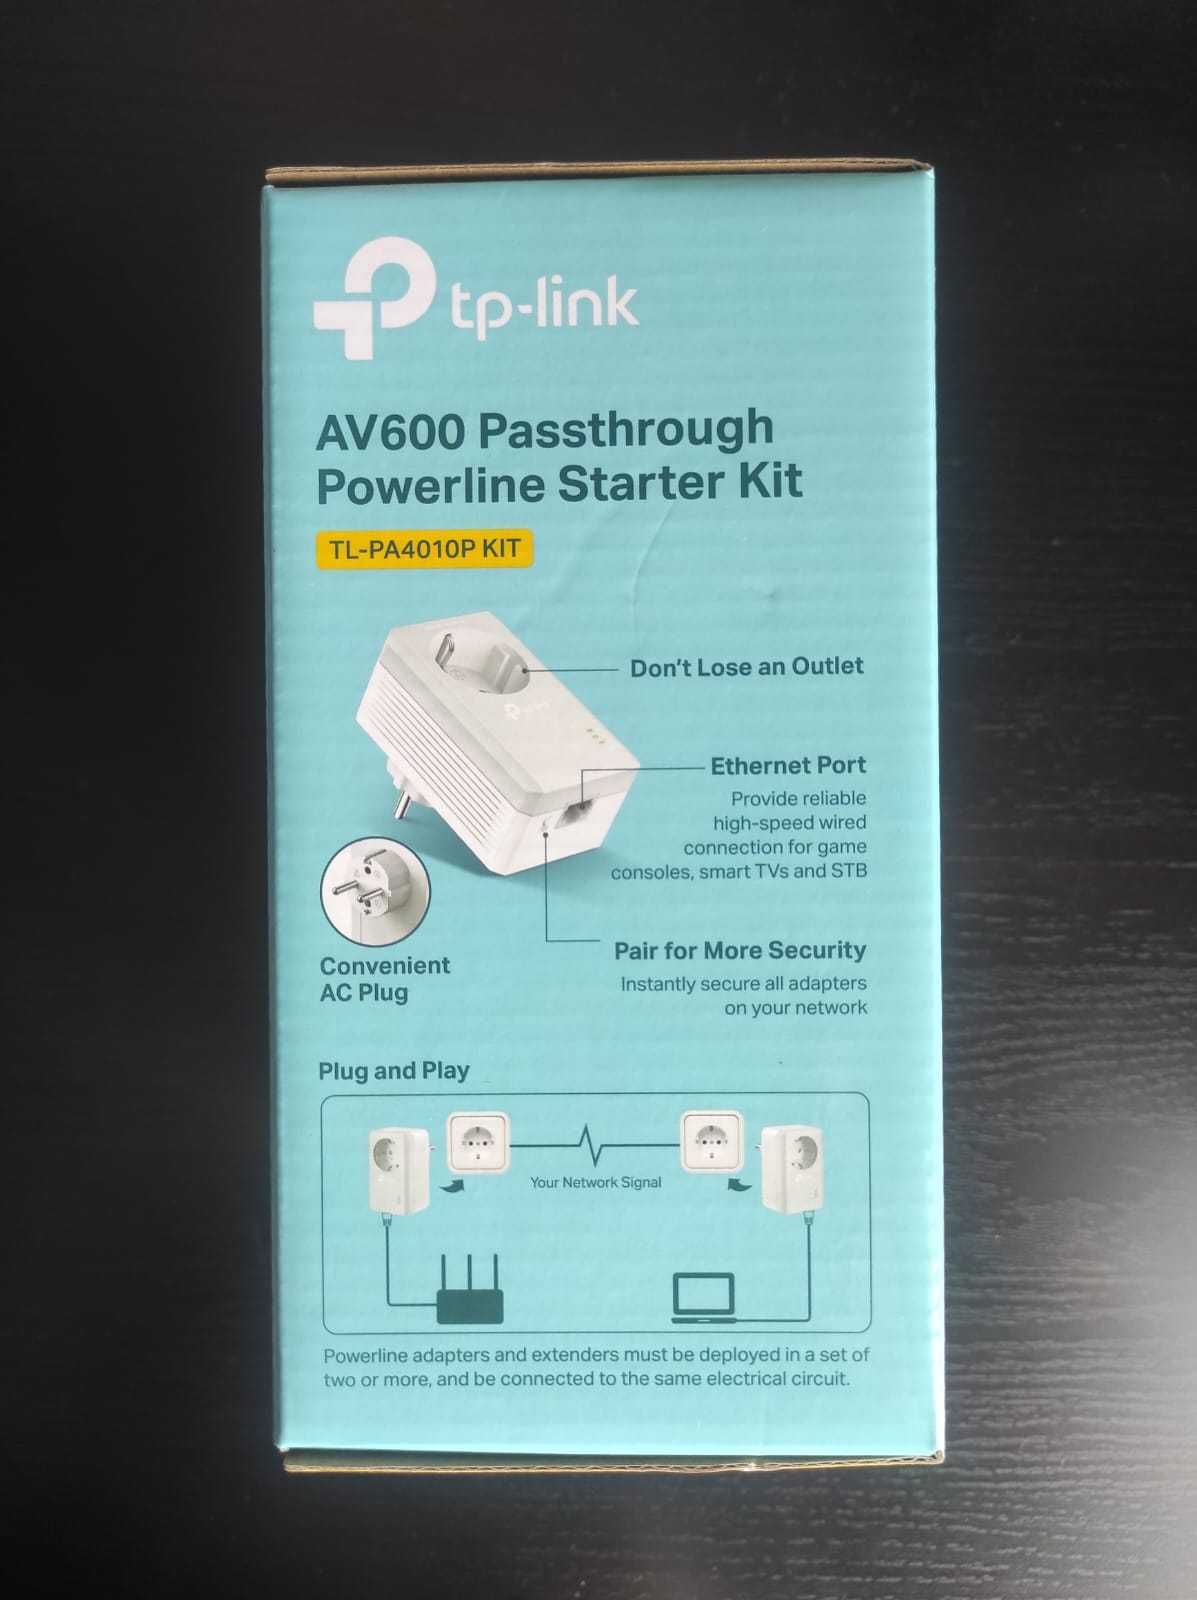 tp-link Passtrought Powerline Starter Kit